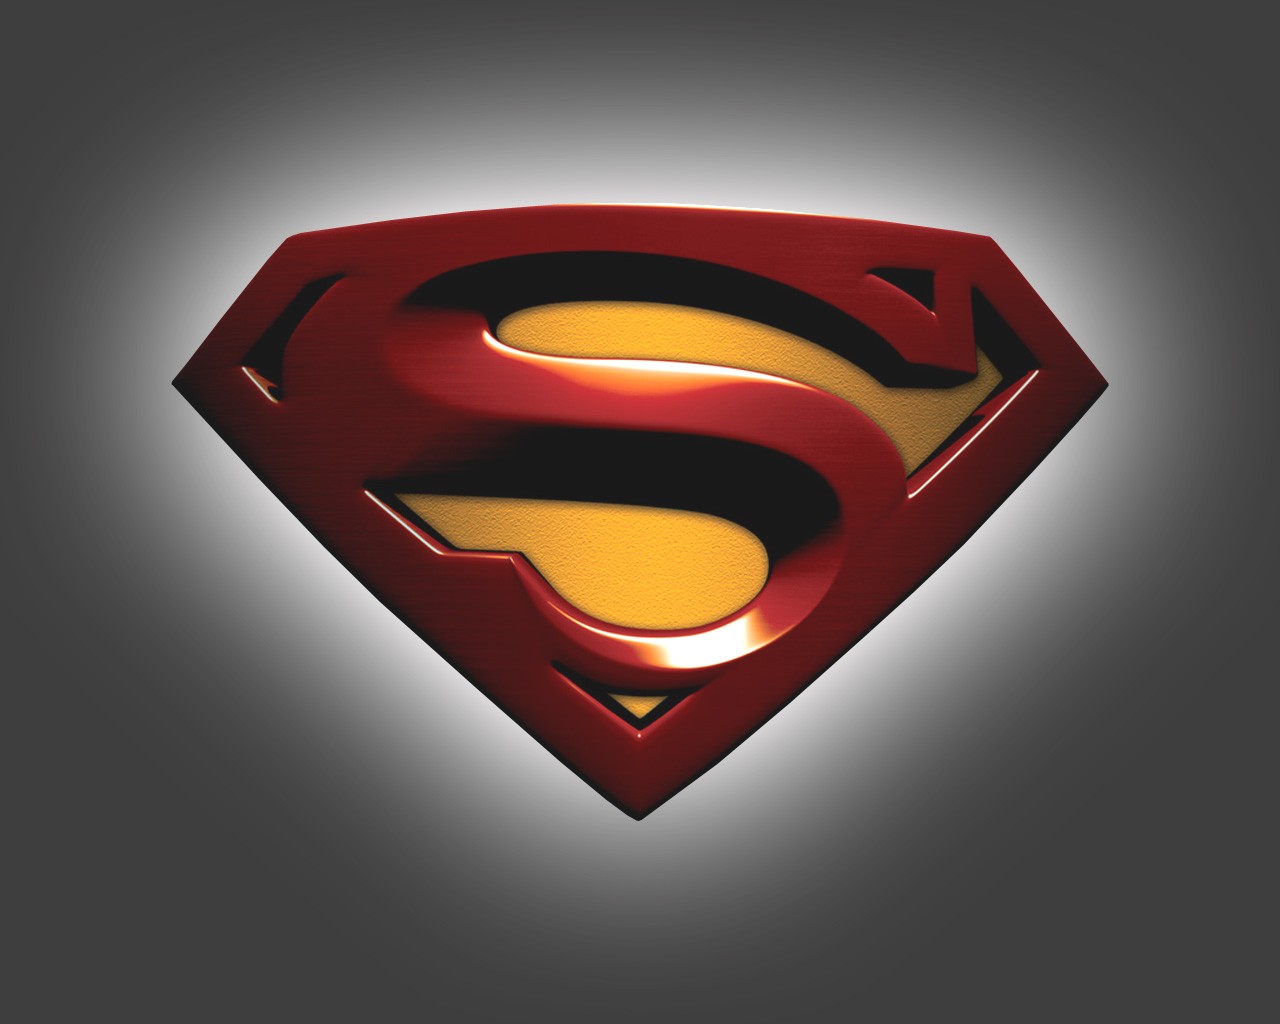 スーパーマンのロゴの壁紙,スーパーマン,スーパーヒーロー,架空の人物,正義リーグ,シンボル